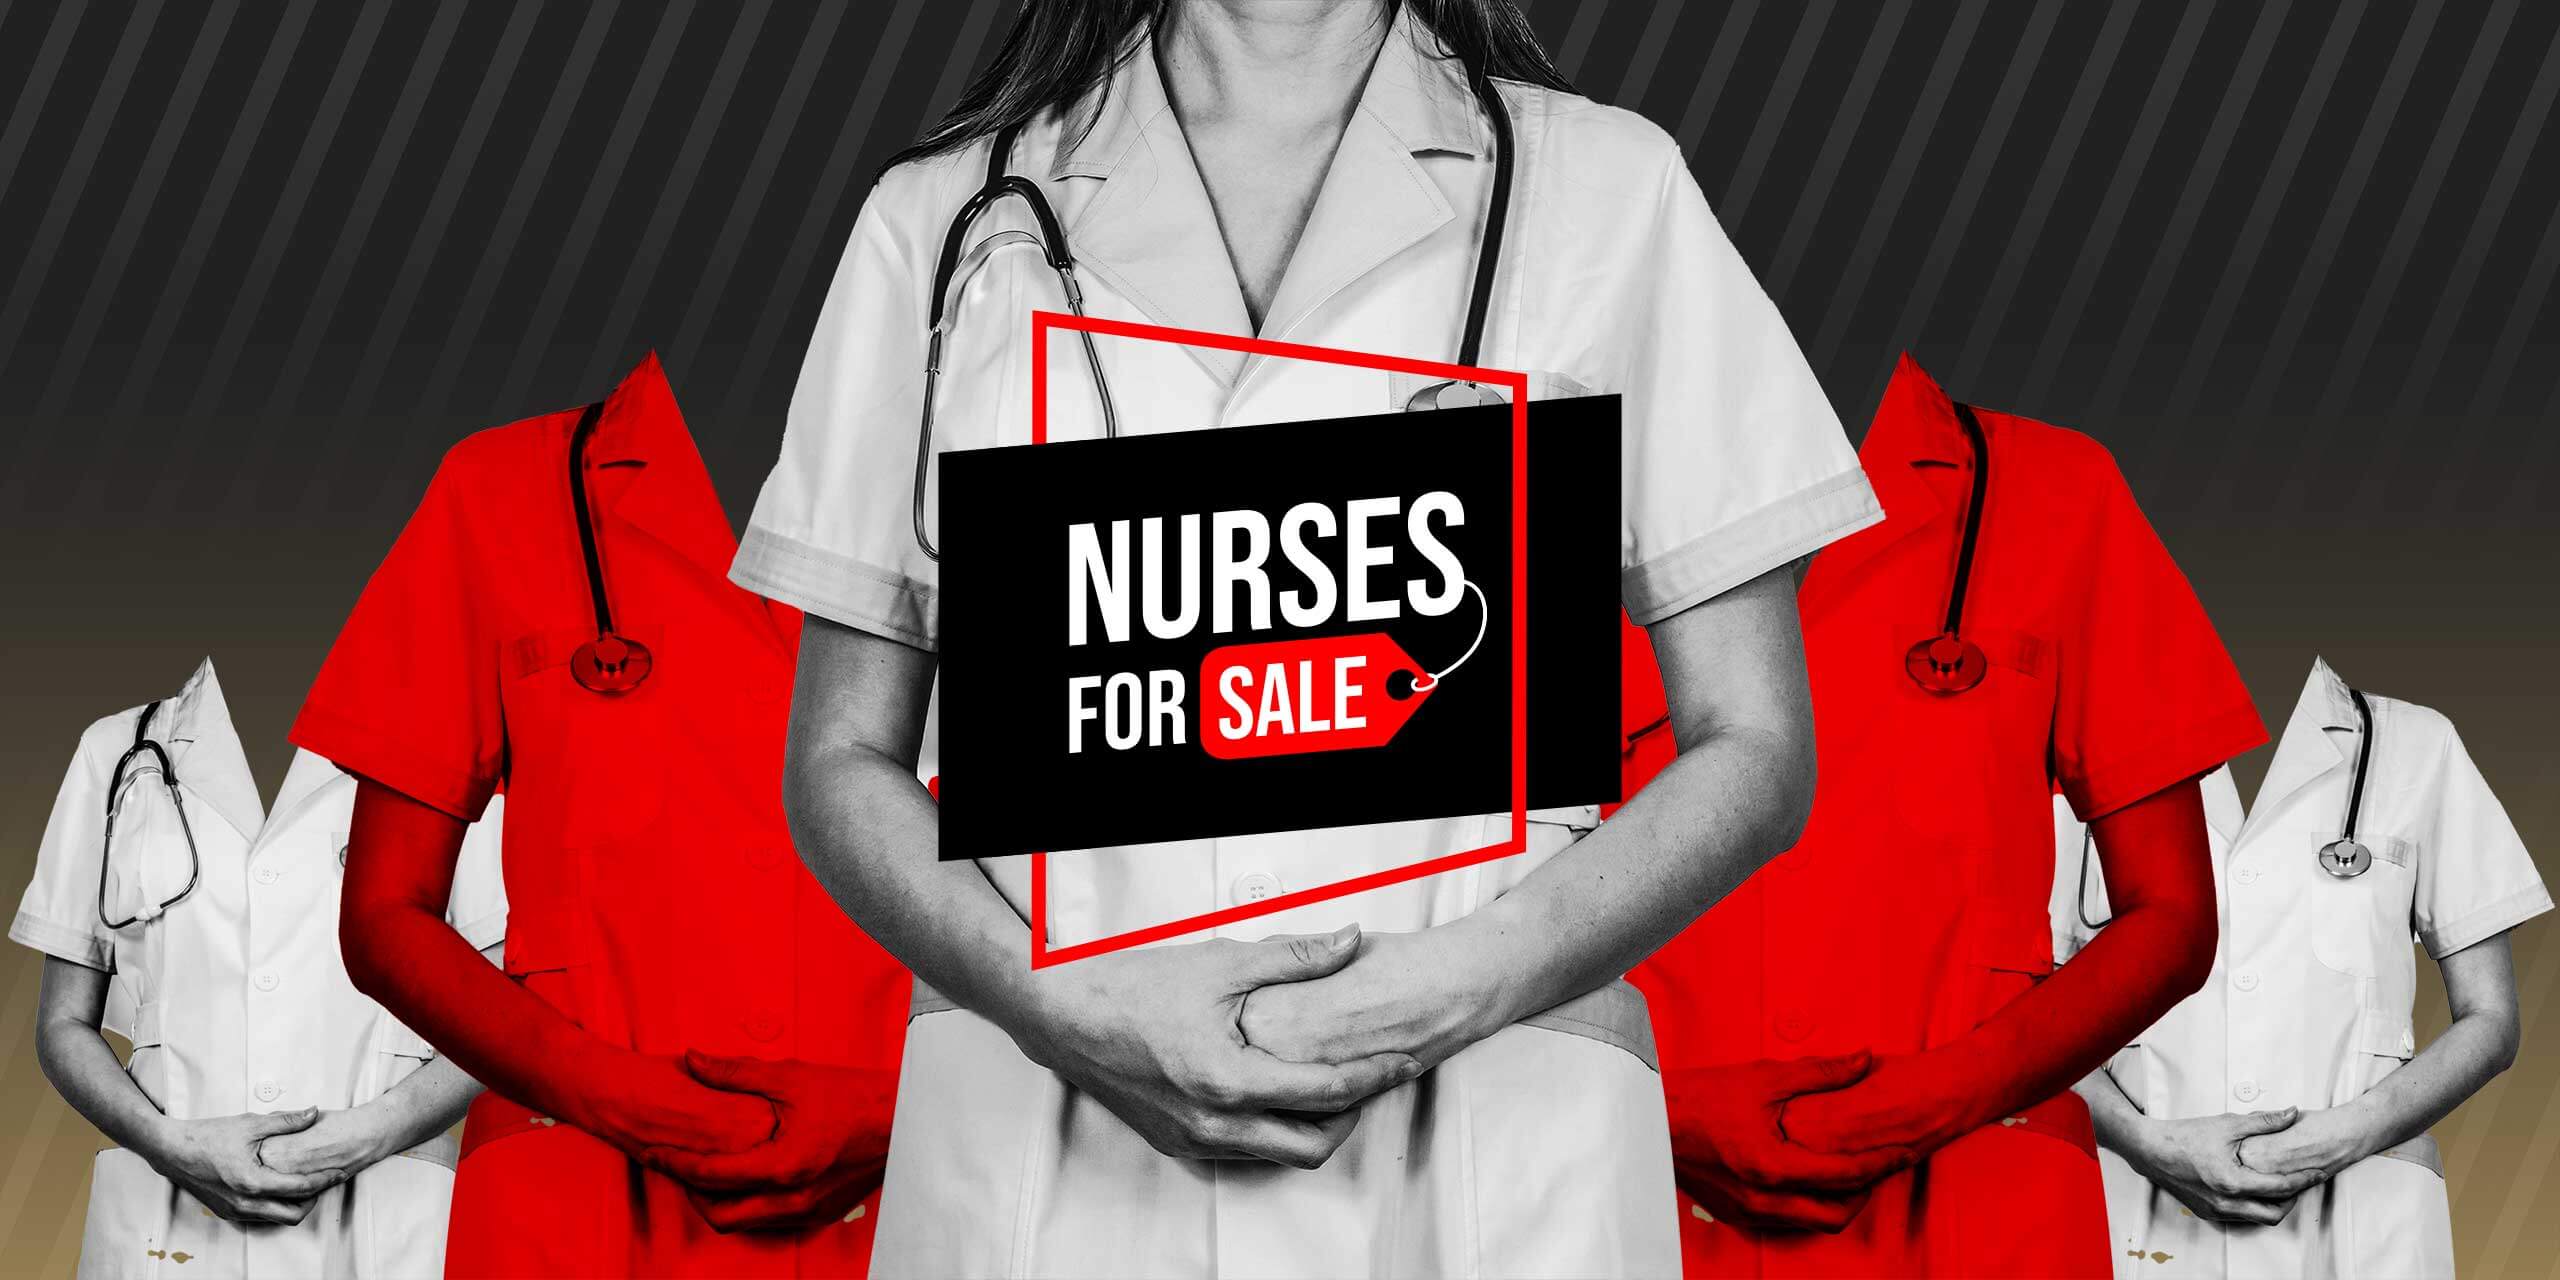 Die Grafik zeigt den Titel "Nurses for Sale" und collagierte Krankenschwestern. Angelehnt ist die Optik an ein Black Friday Verkaufsdesign